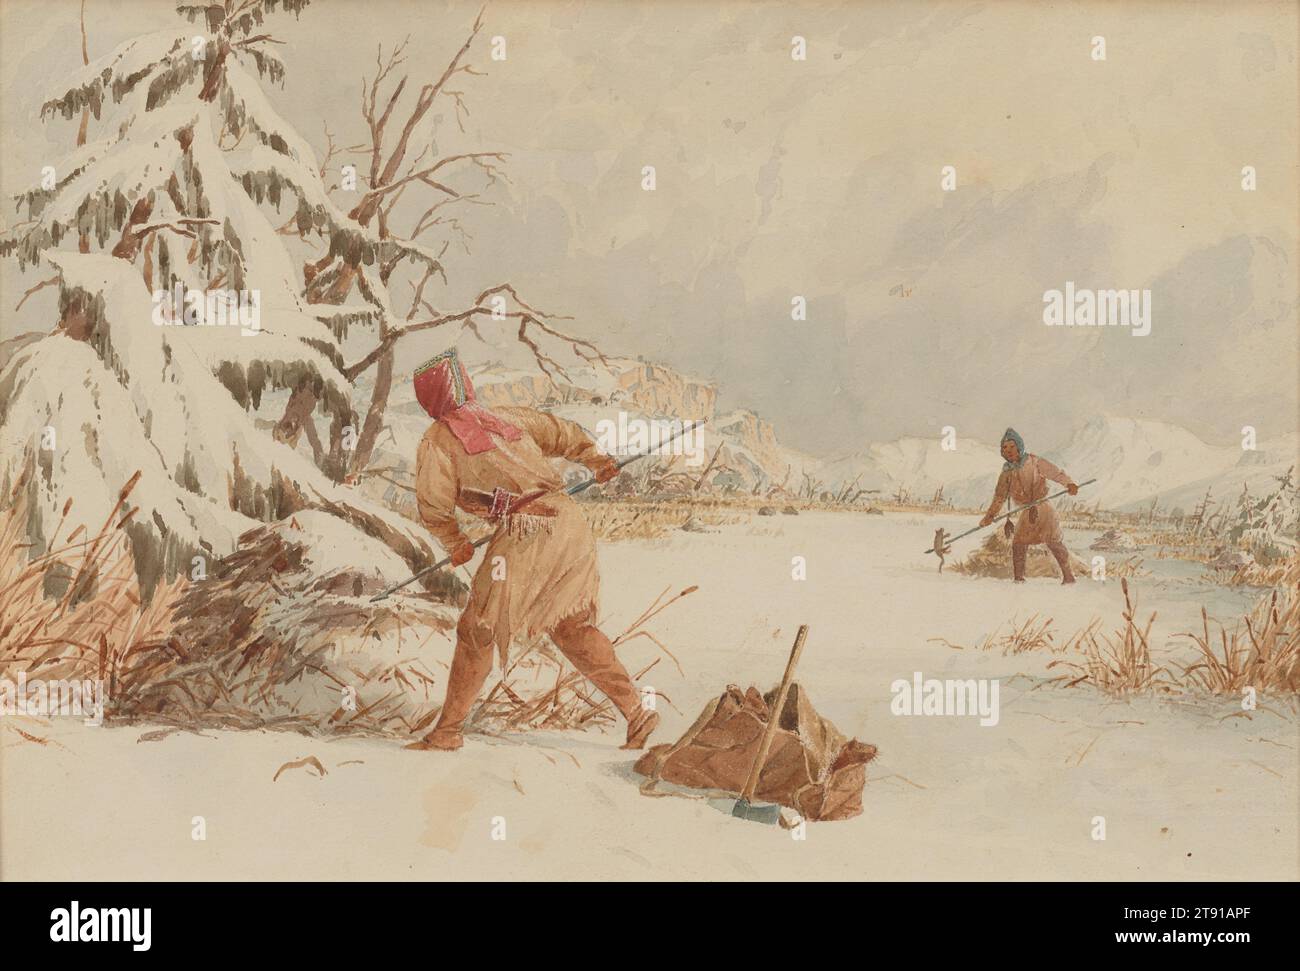 Spearing Muskrats in Winter, 1849–1855, Seth Eastman, amerikanisch, 1808–1875, 3/4 x 1/8 Zoll (19,69 x 28,26 cm) (Bild)8 7/8 x 11 1/8 Zoll (22,54 x 28,26 cm) (Blatt), Aquarell, USA, 19. Jahrhundert, die Muskratenköpfe, die aus dem Sack schauen, deuten auf eine gute Jagd hin. Eine kalte, weiße Landschaft erstreckt sich noch immer, aber das Echo der Haltungen der Jäger deutet auf eine Verbindung von Kameradschaft hin. Angesichts des schwindenden Angebots an Tieren mit begehrten Pelzfellen wie Biber jagten (und aßen) die Ureinwohner Muskraten, obwohl ihr Pelz bei der Handelsgesellschaft weit weniger verdient hatte. Stockfoto